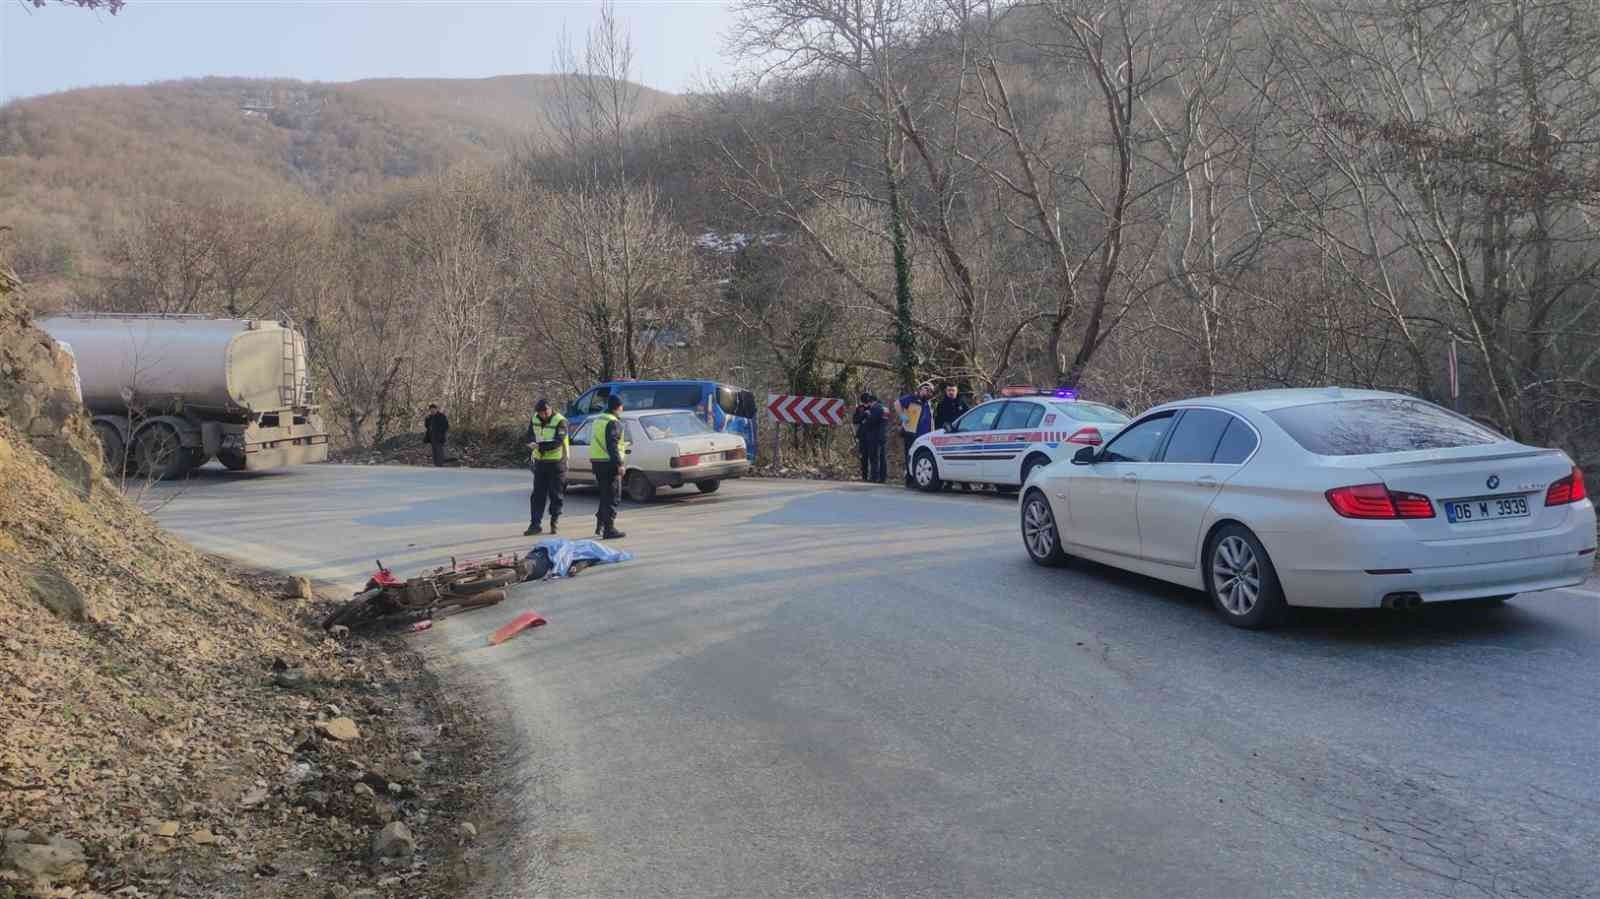 Bursa’nın Orhangazi ilçesinde bir motosiklet karşı yönden gelen kamyona yandan çarptı. Kazada motosiklet sürücüsü olay yerinde feci şekilde can ...